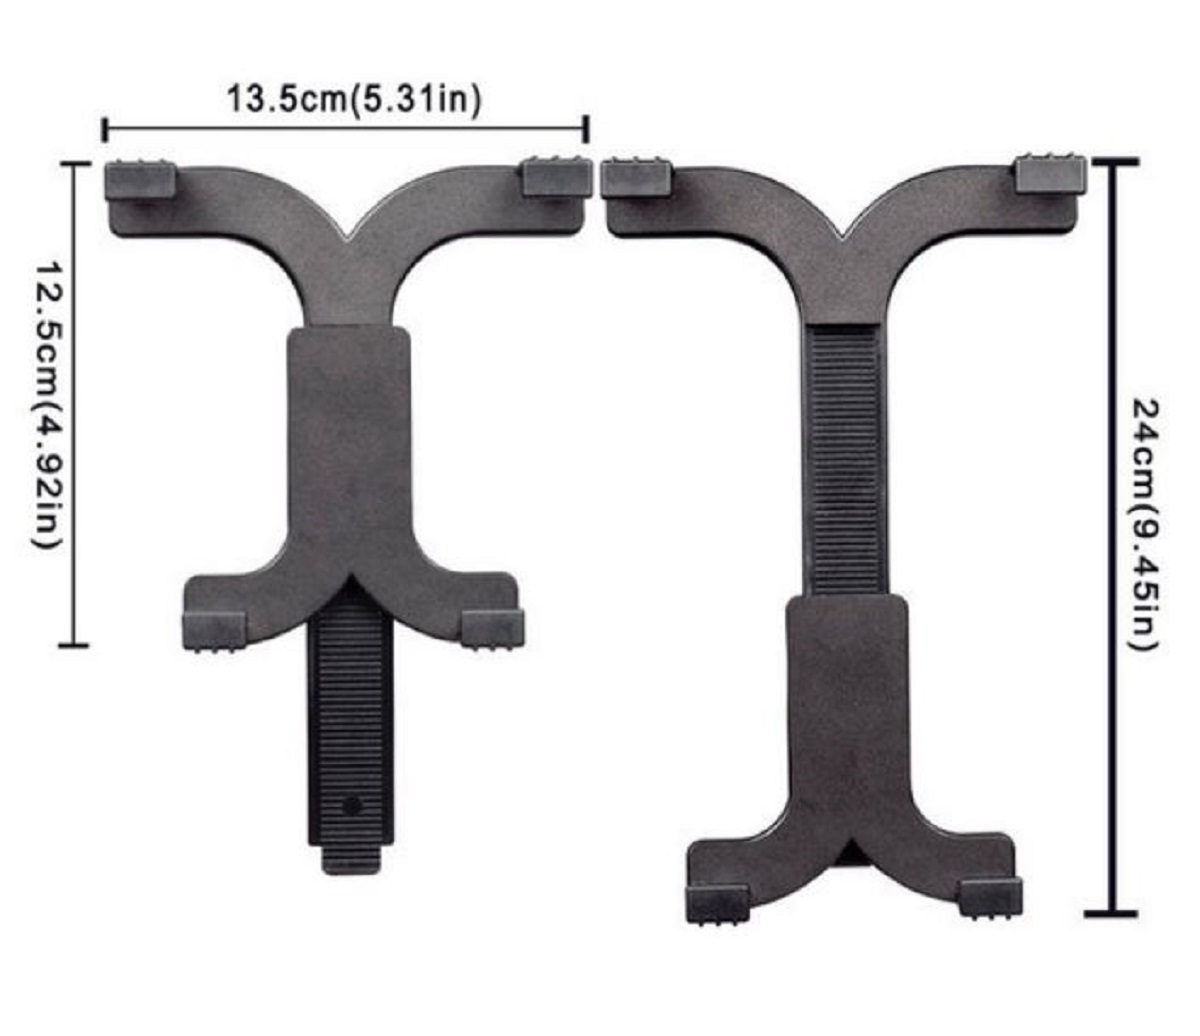 BRESSER BR-145 flexible gooseneck mount for tablets and mobile phones